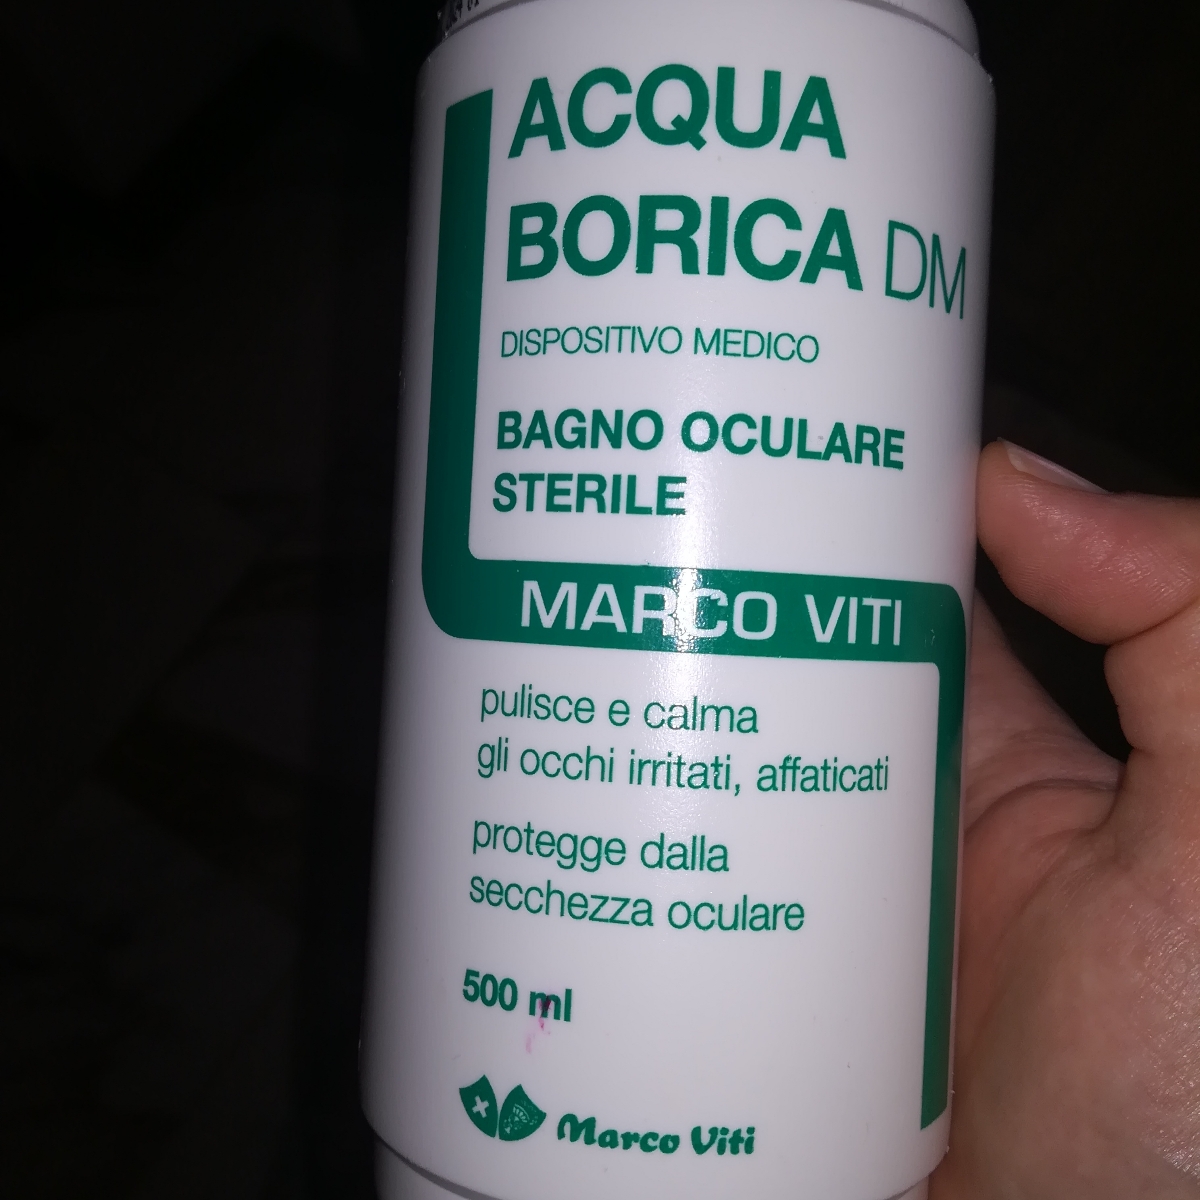 Marco Viti acqua borica Reviews